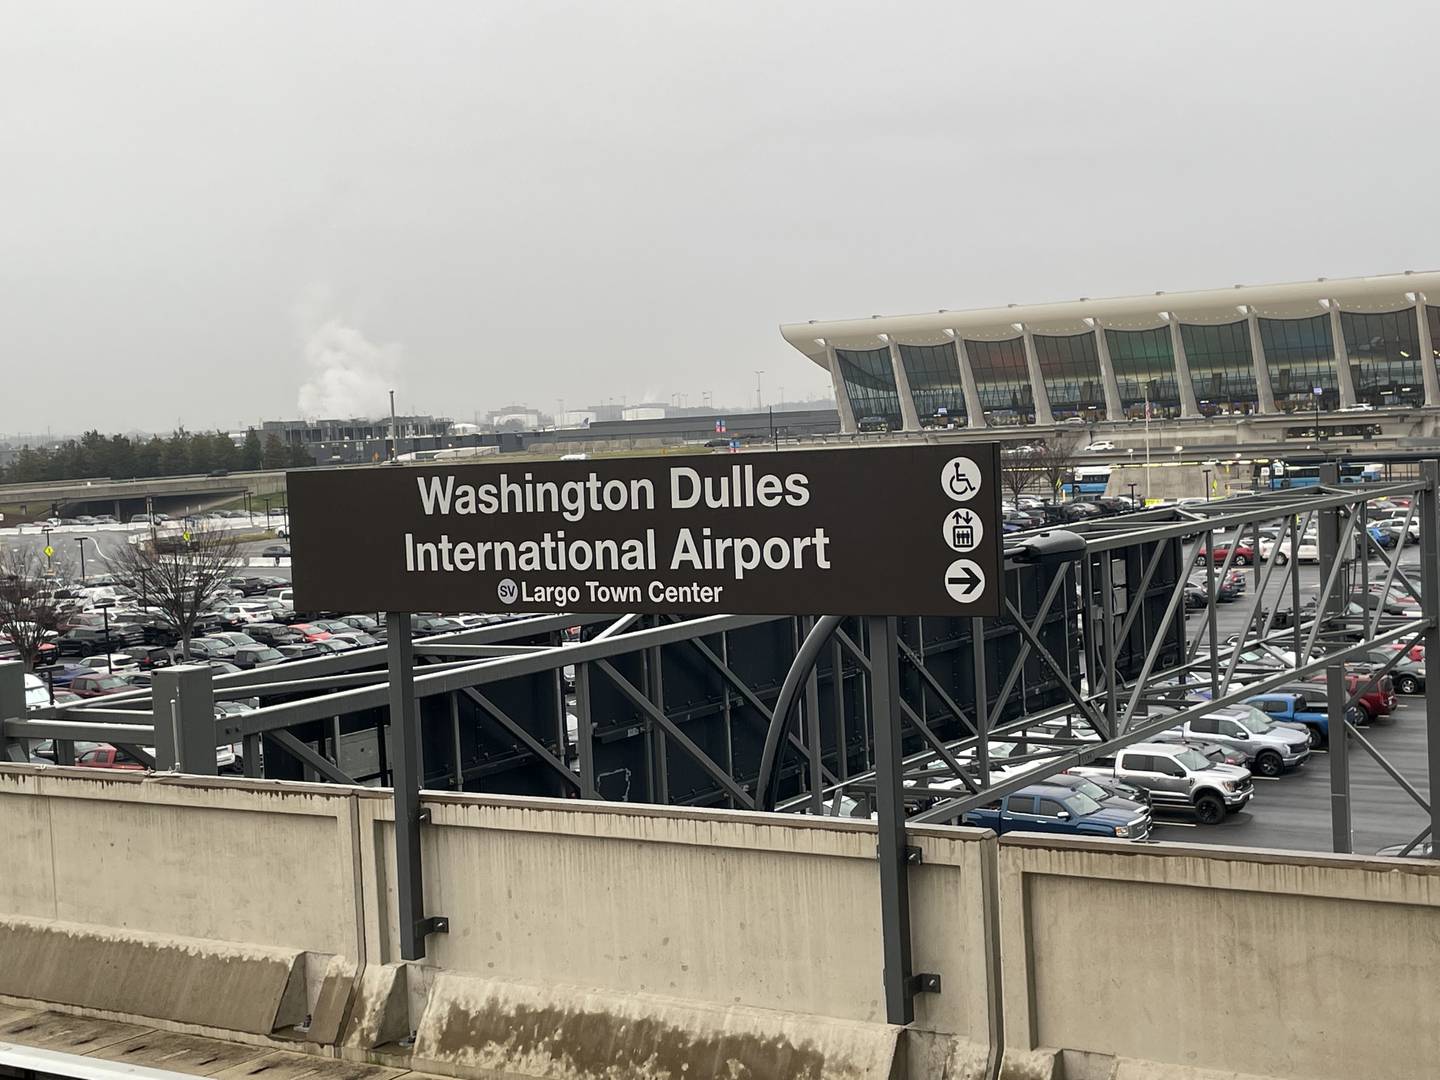 Estación del metro en el Aeropuerto Internacional Washington Dulles.